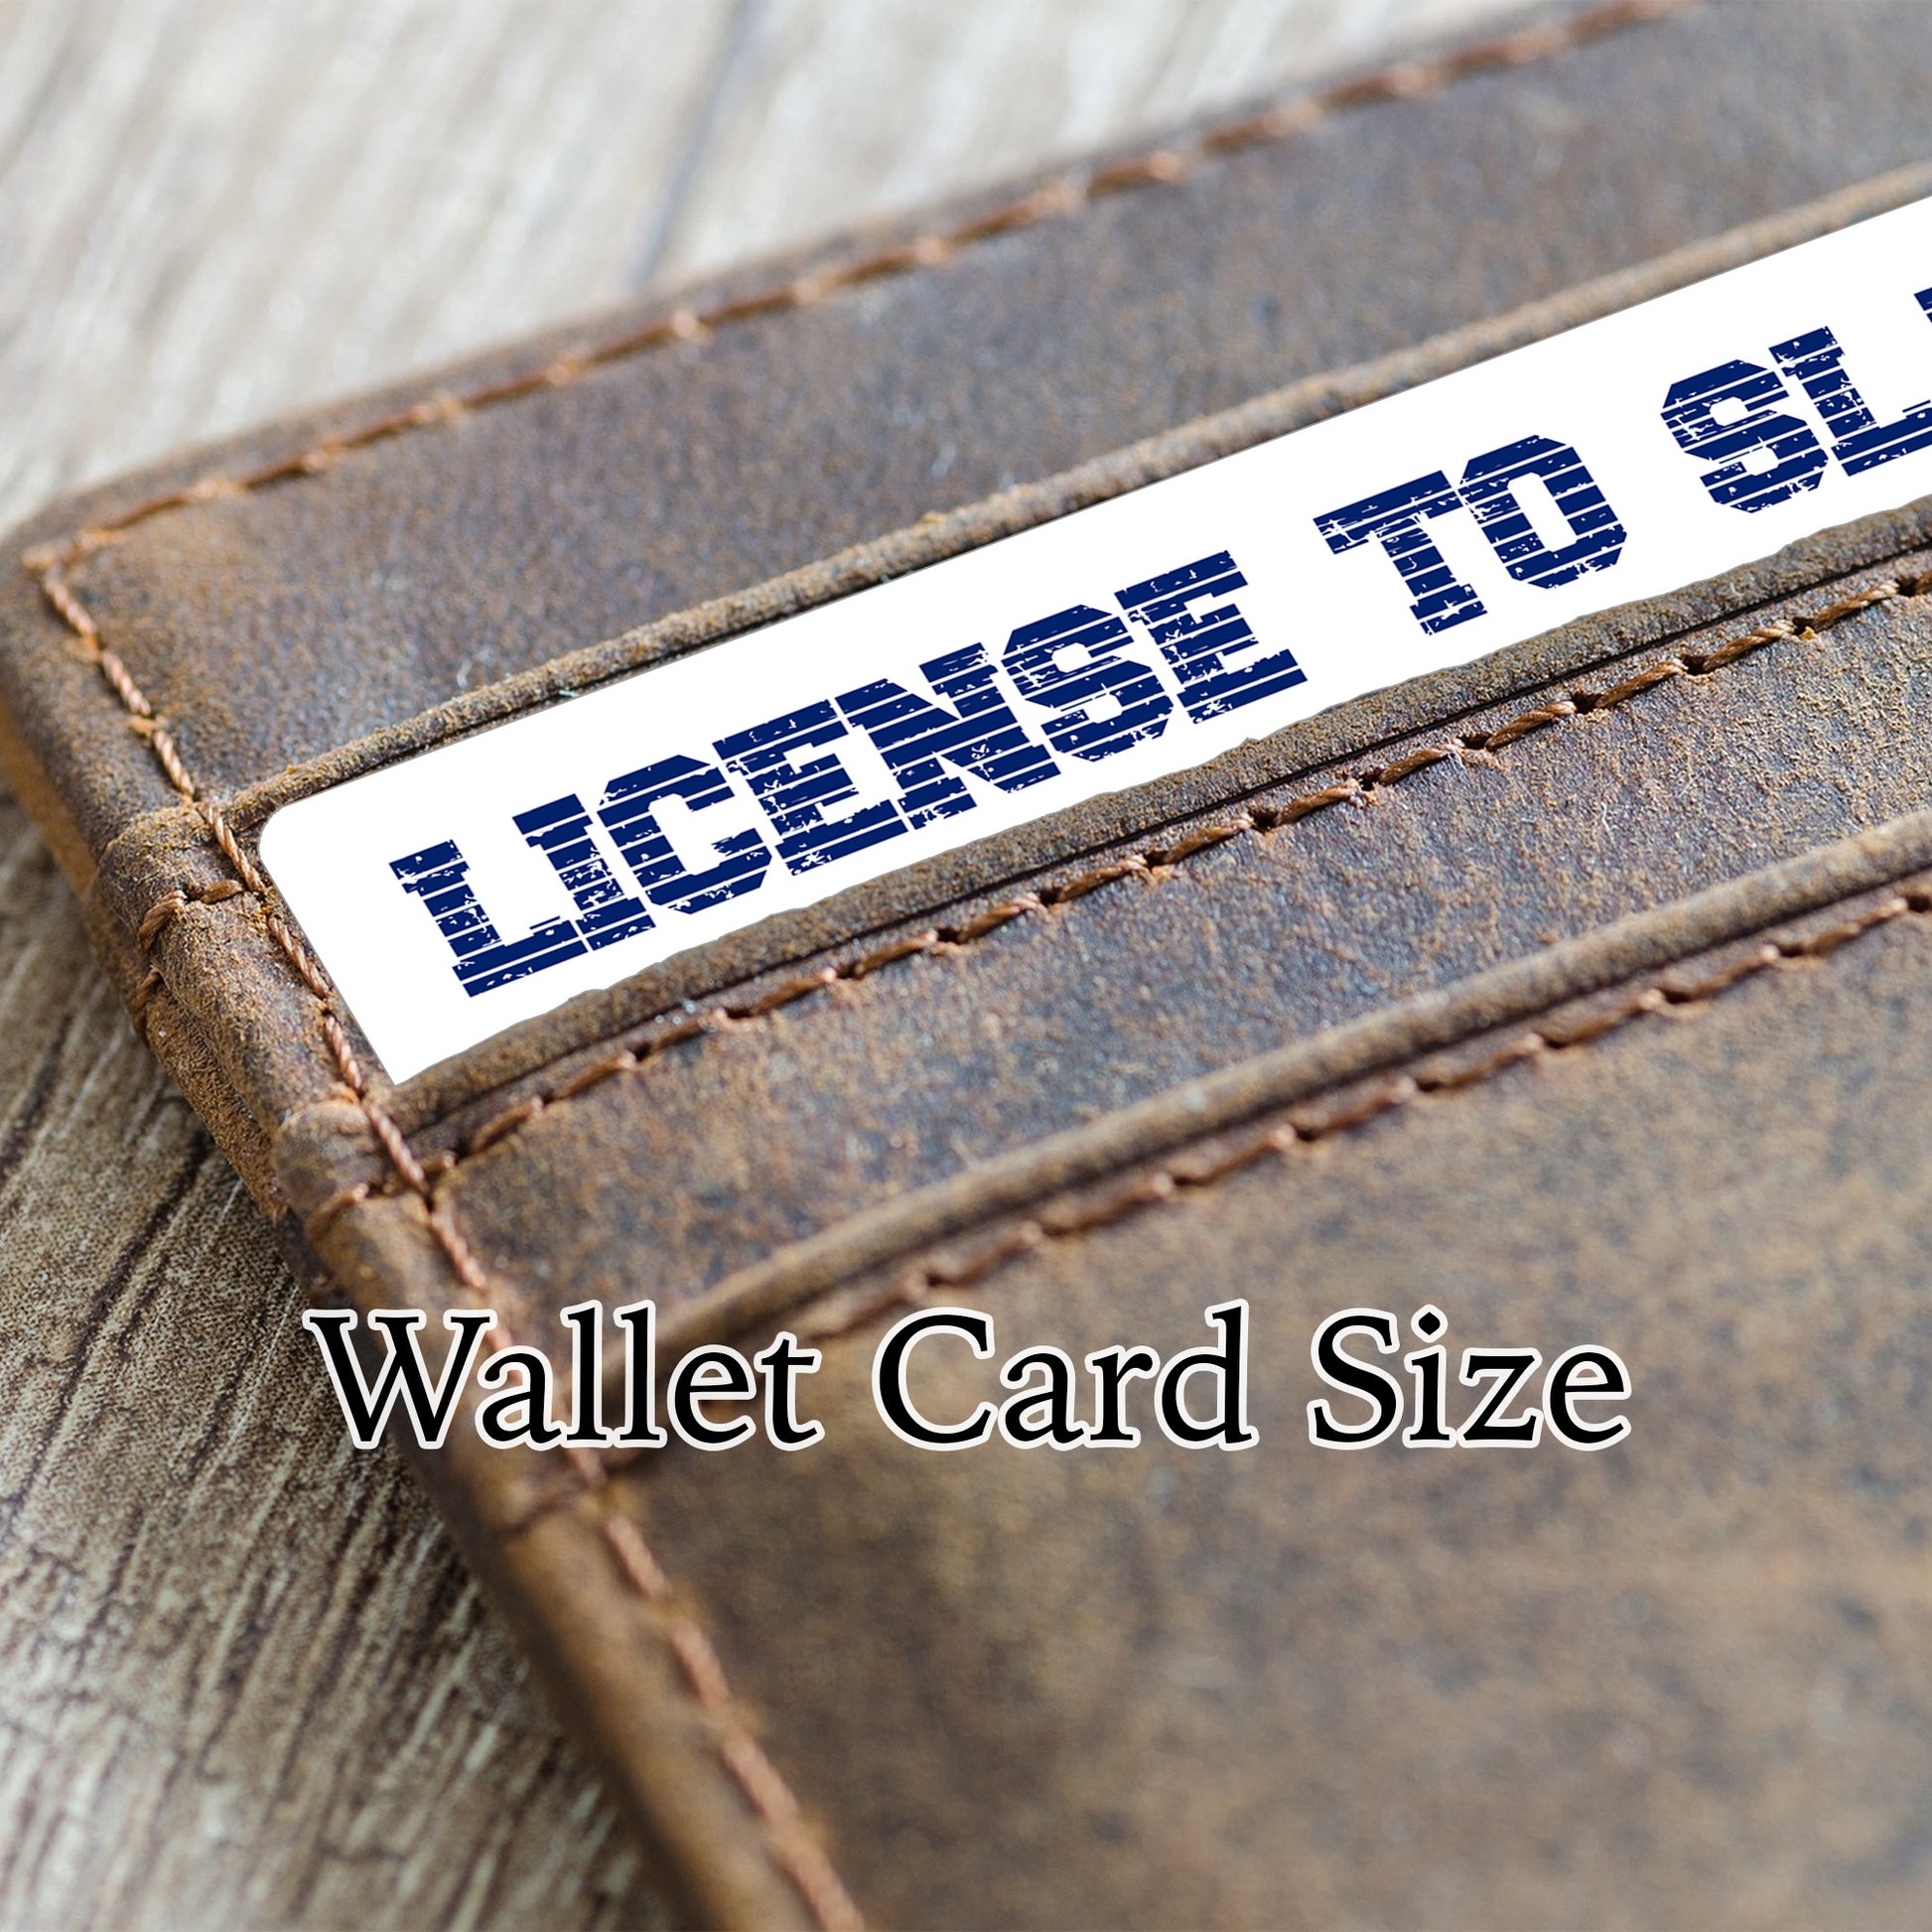 Agender pride personalised license to slay card